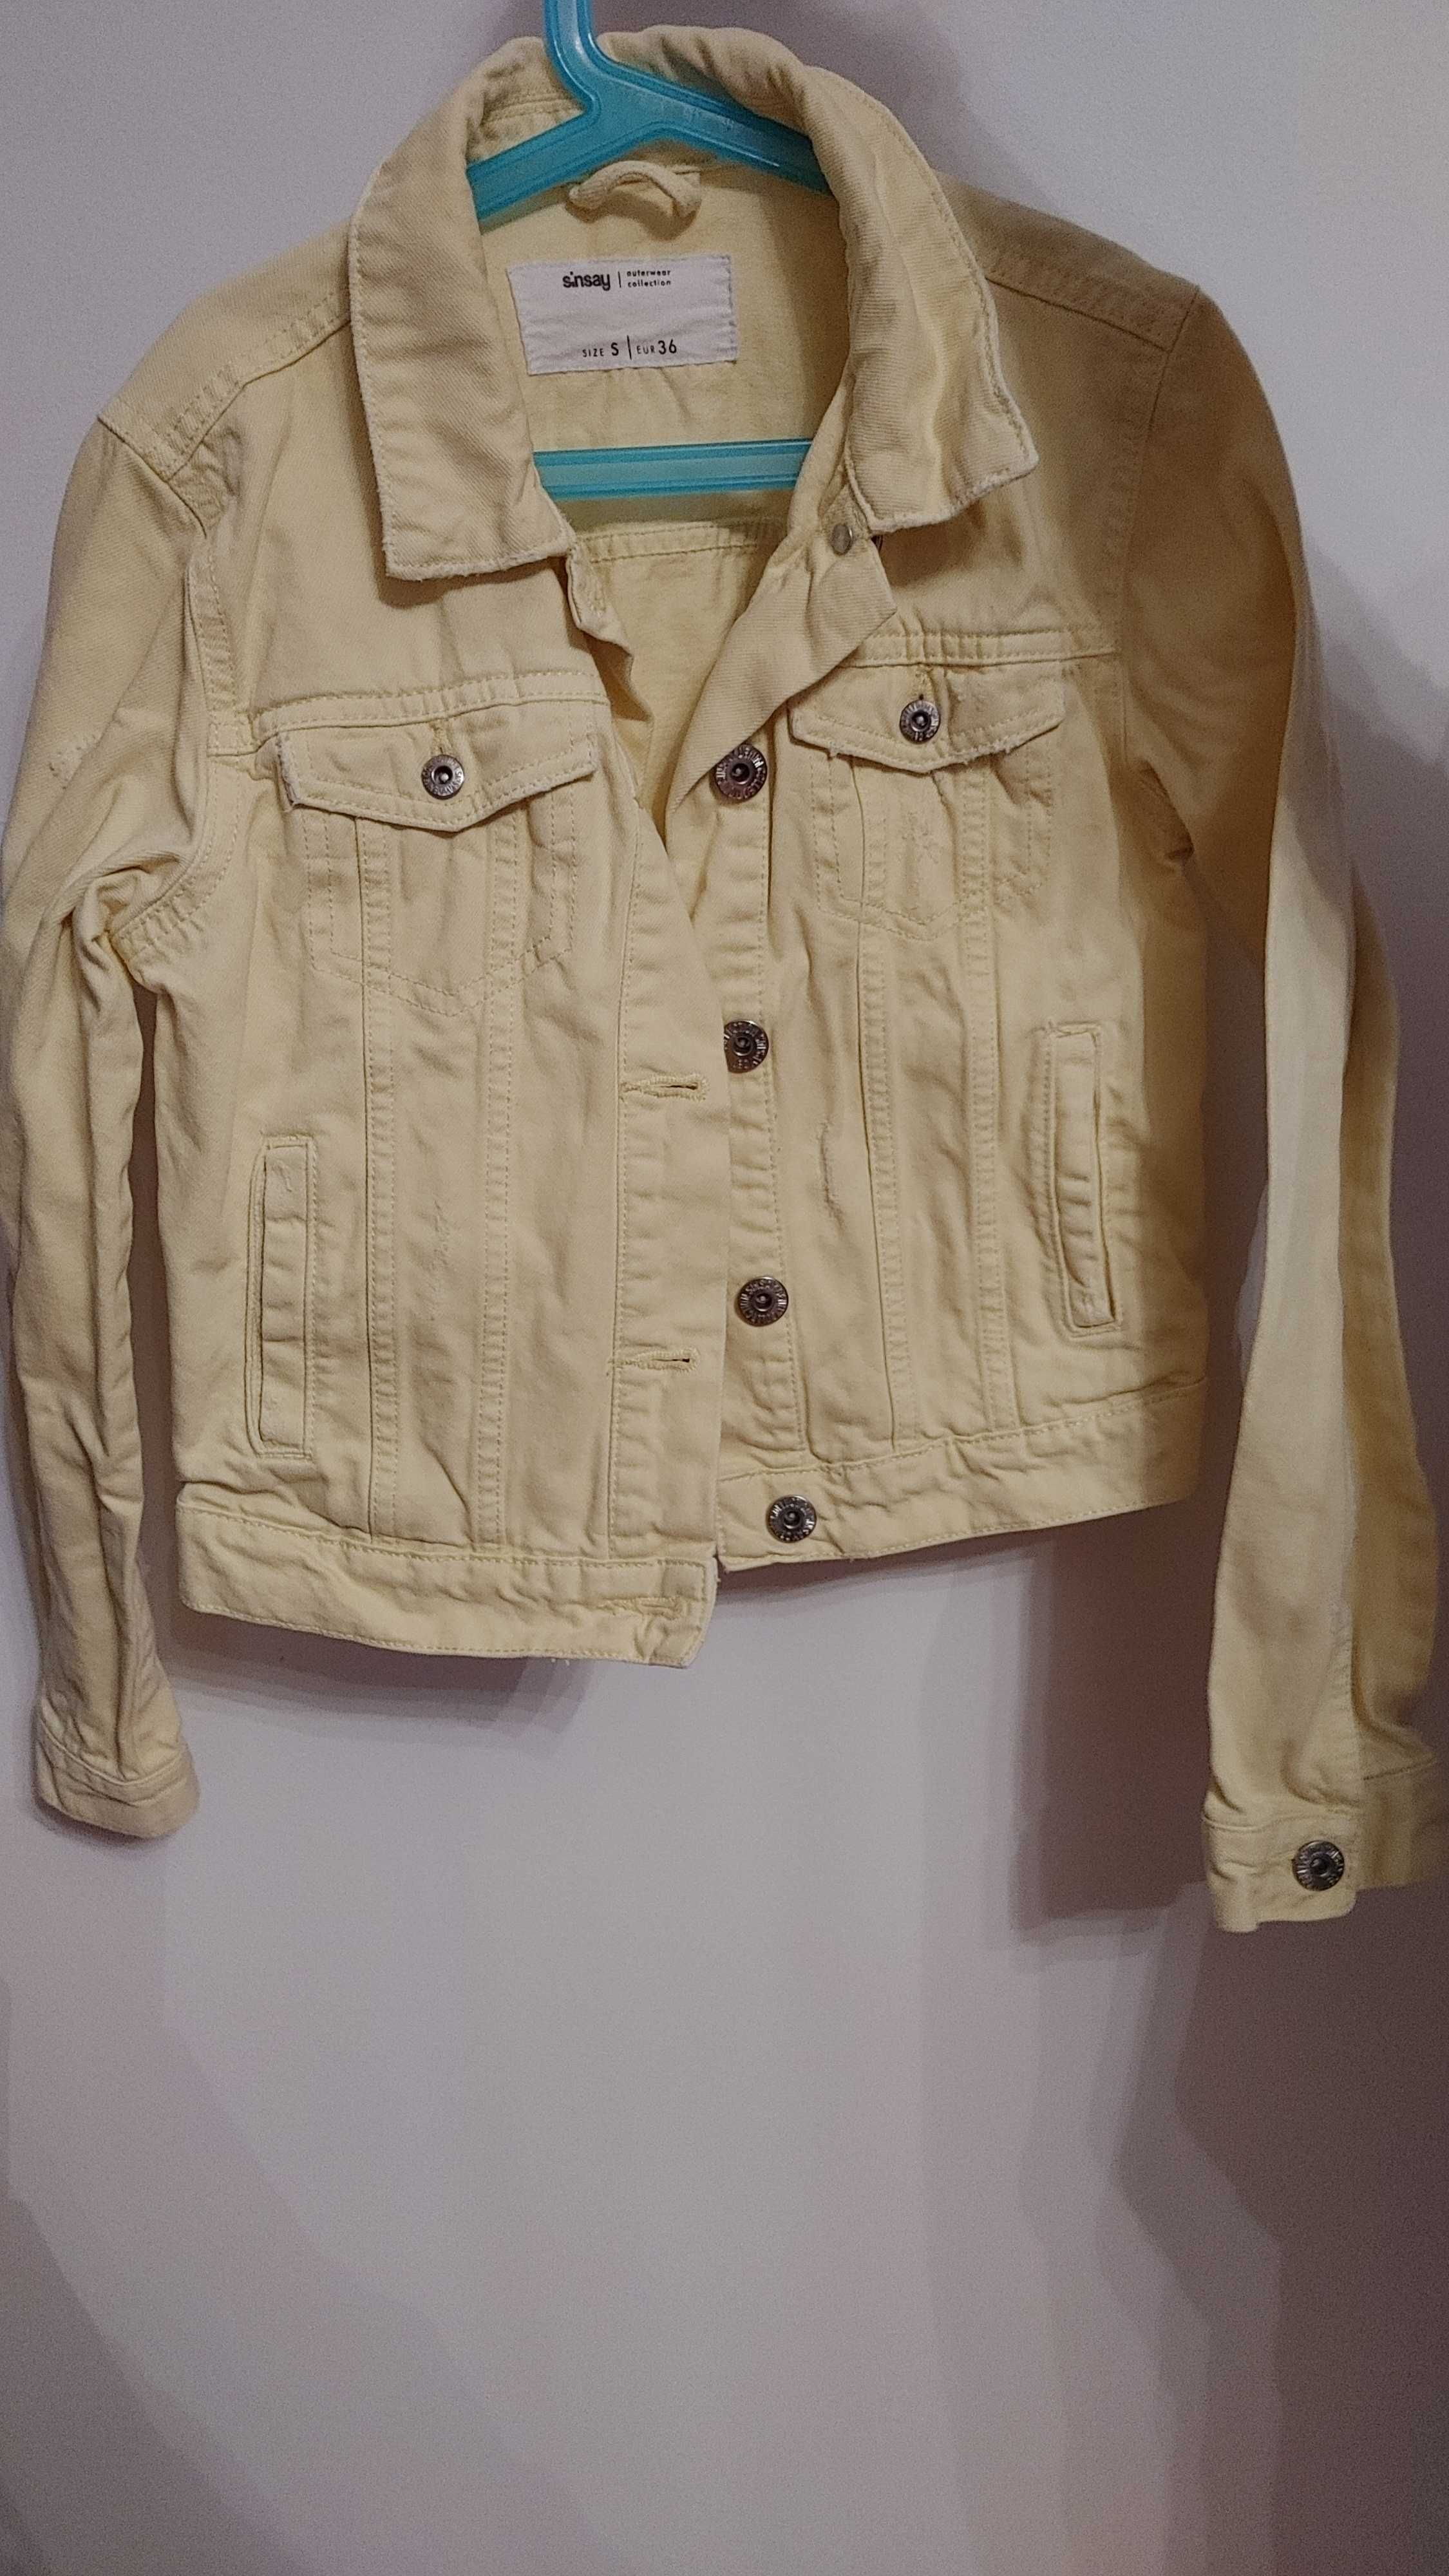 Kurtka,katana jeansowa żółta rozmiar S, 36